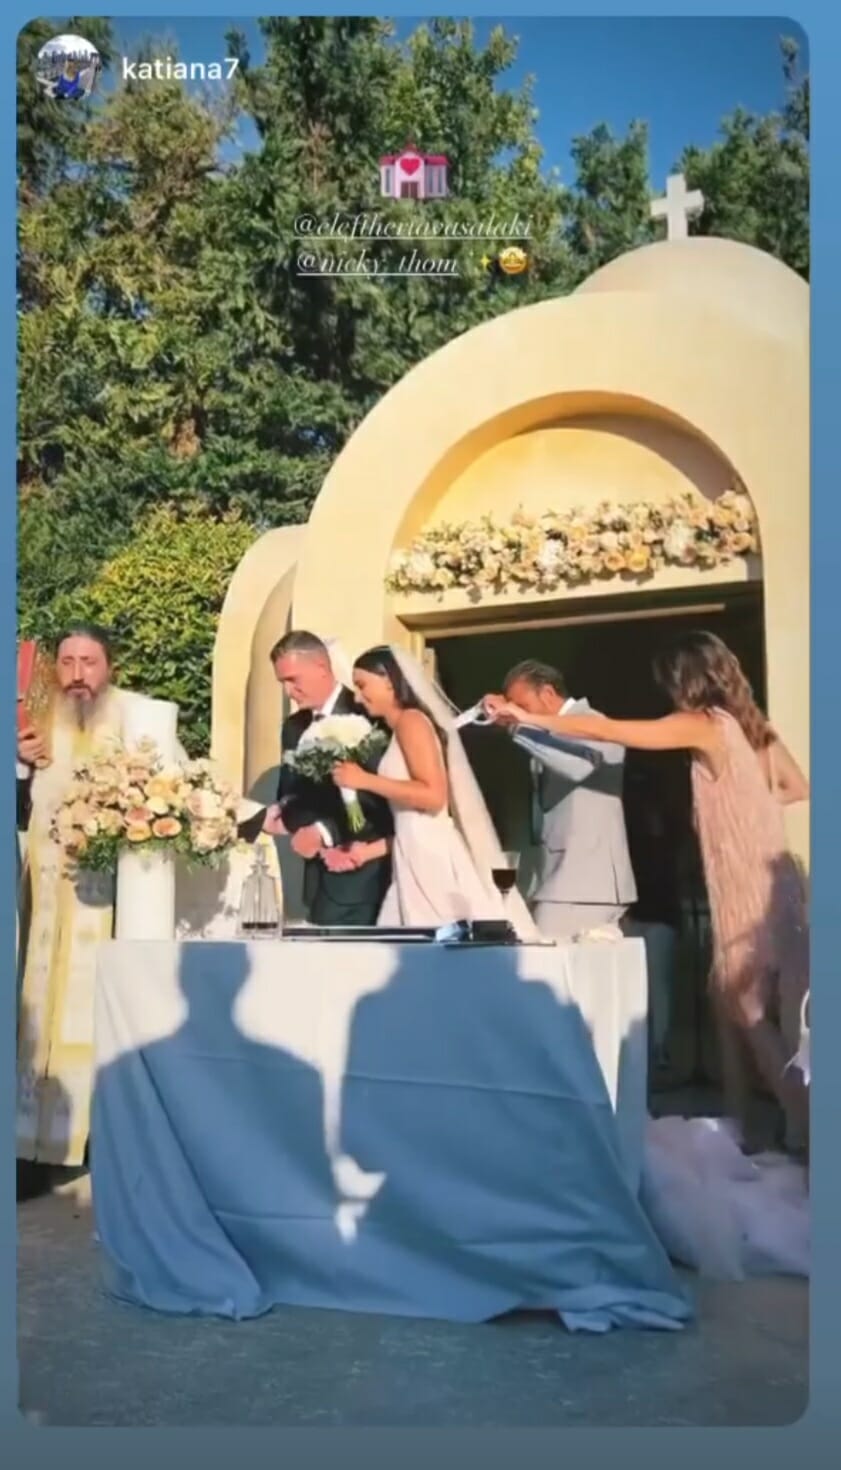 Πρώην διεθνής ποδοσφαιριστής παντρεύτηκε με κουμπάρους τον Γιάννη Μαρακάκη και την σύζυγό του, Νίκη Θωμοπούλου